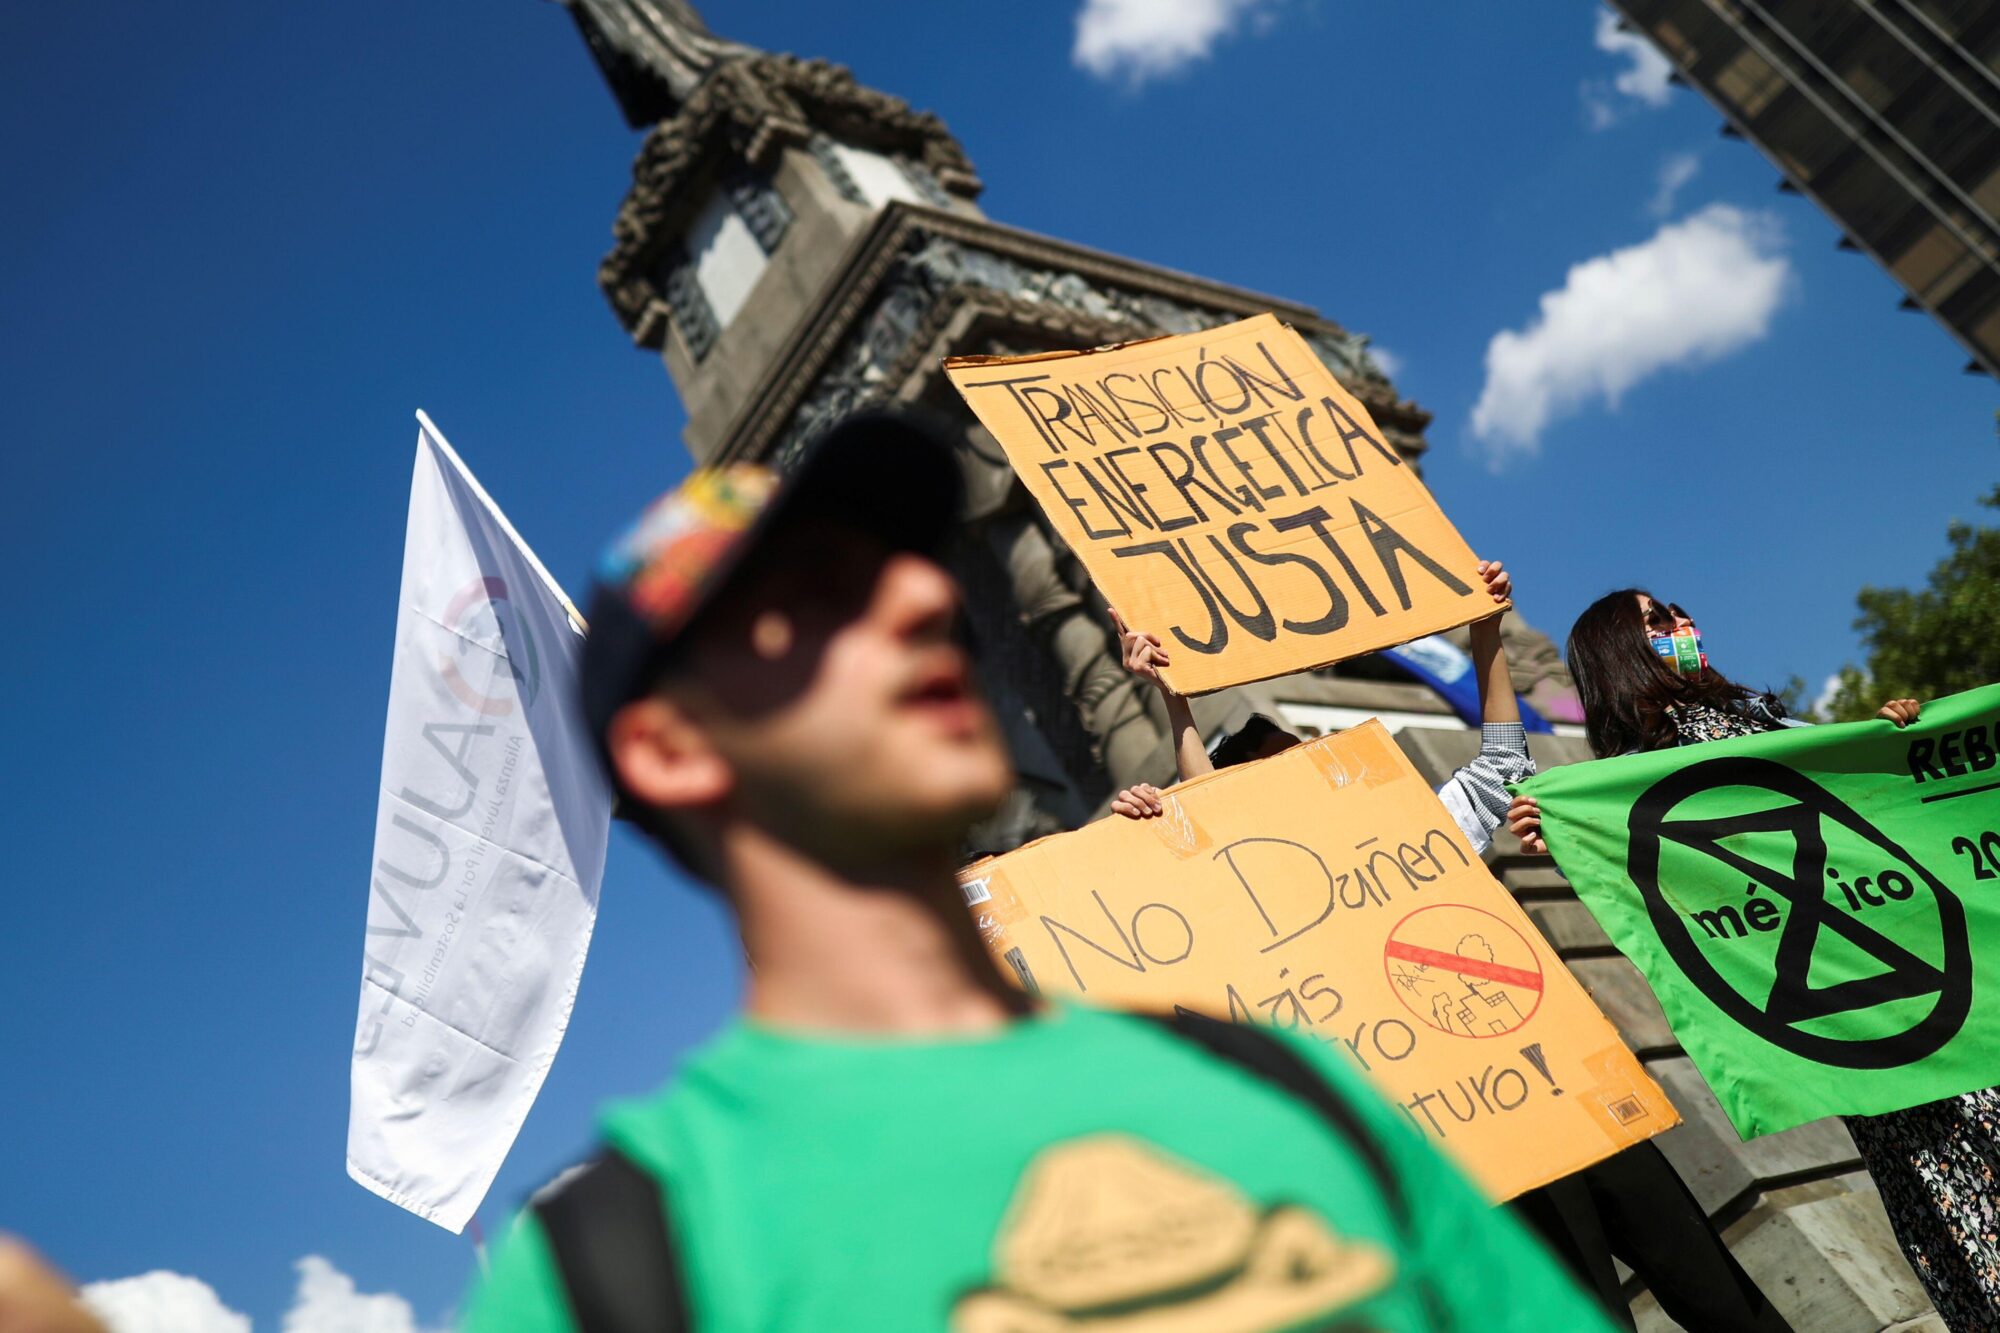 jóvenes en una protesta climática, cartel que dice "Transición energética justa"